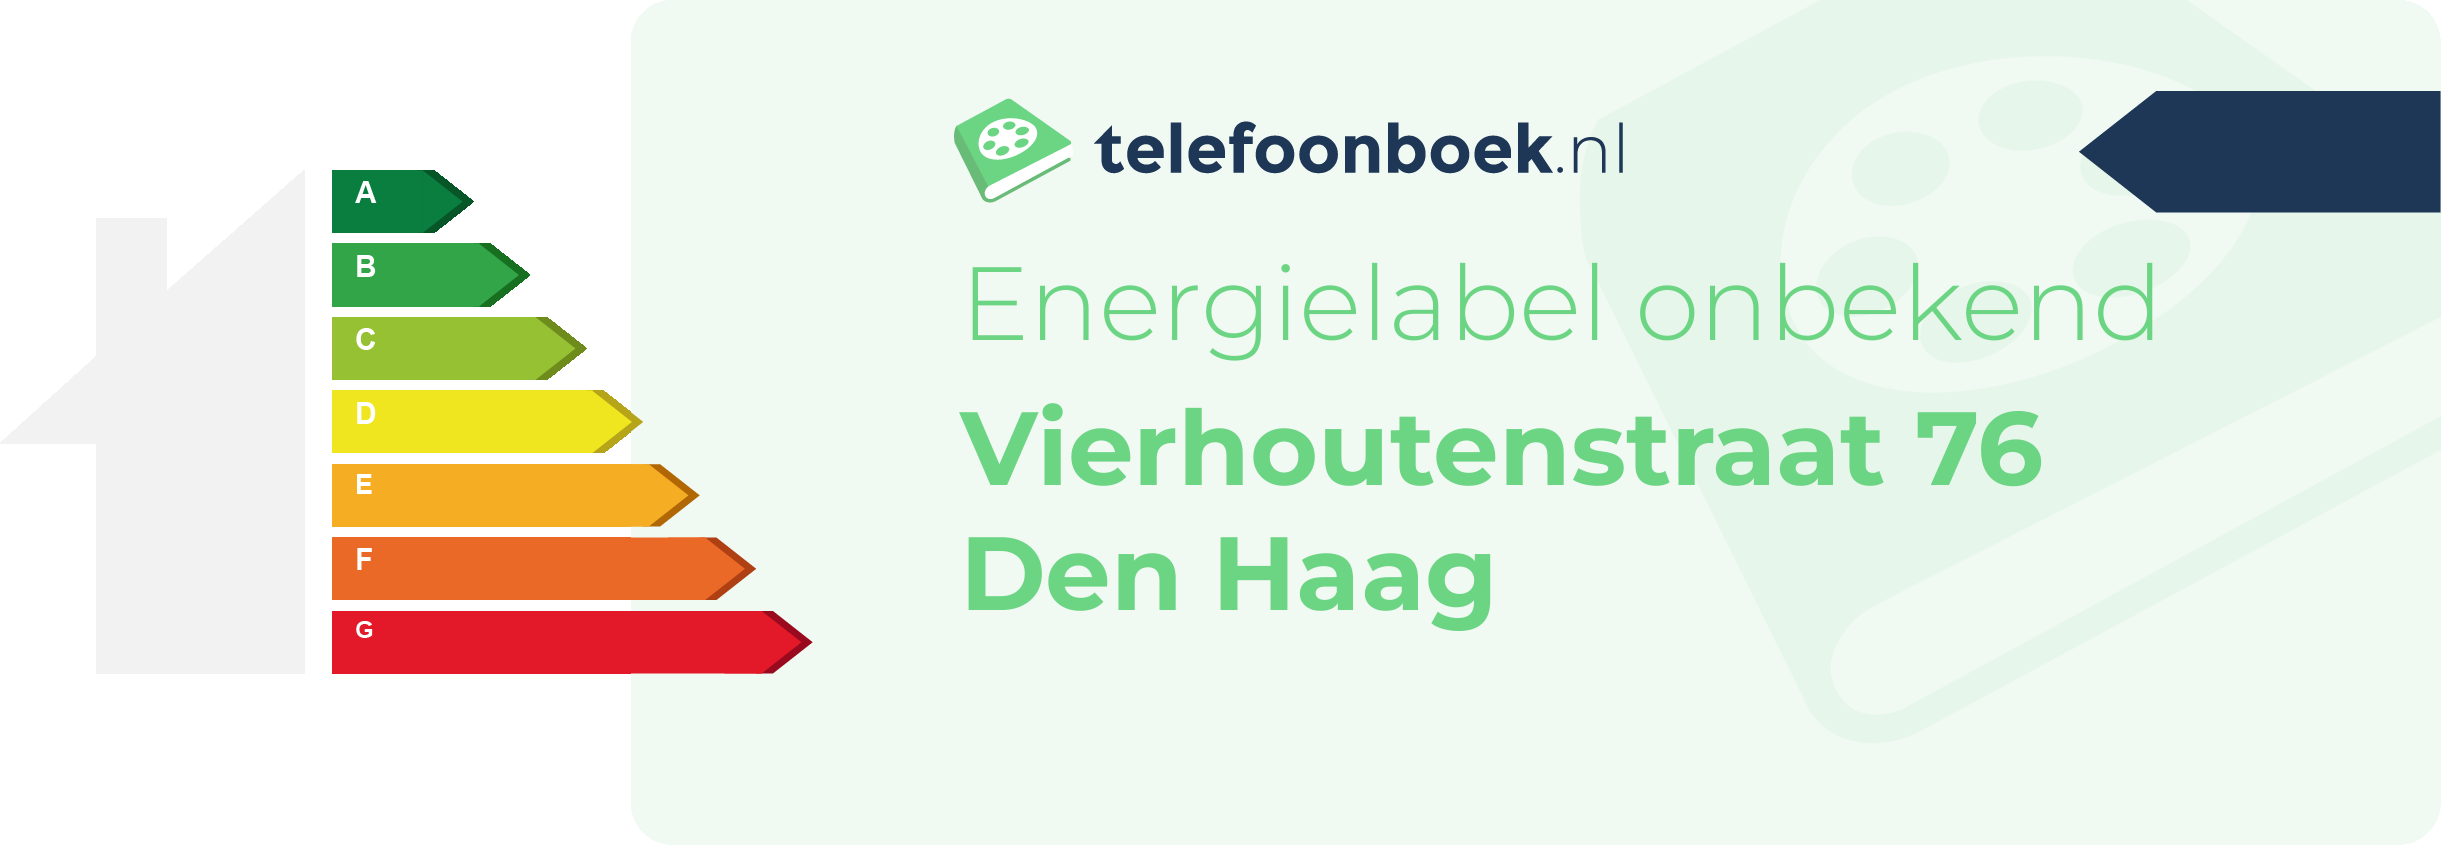 Energielabel Vierhoutenstraat 76 Den Haag